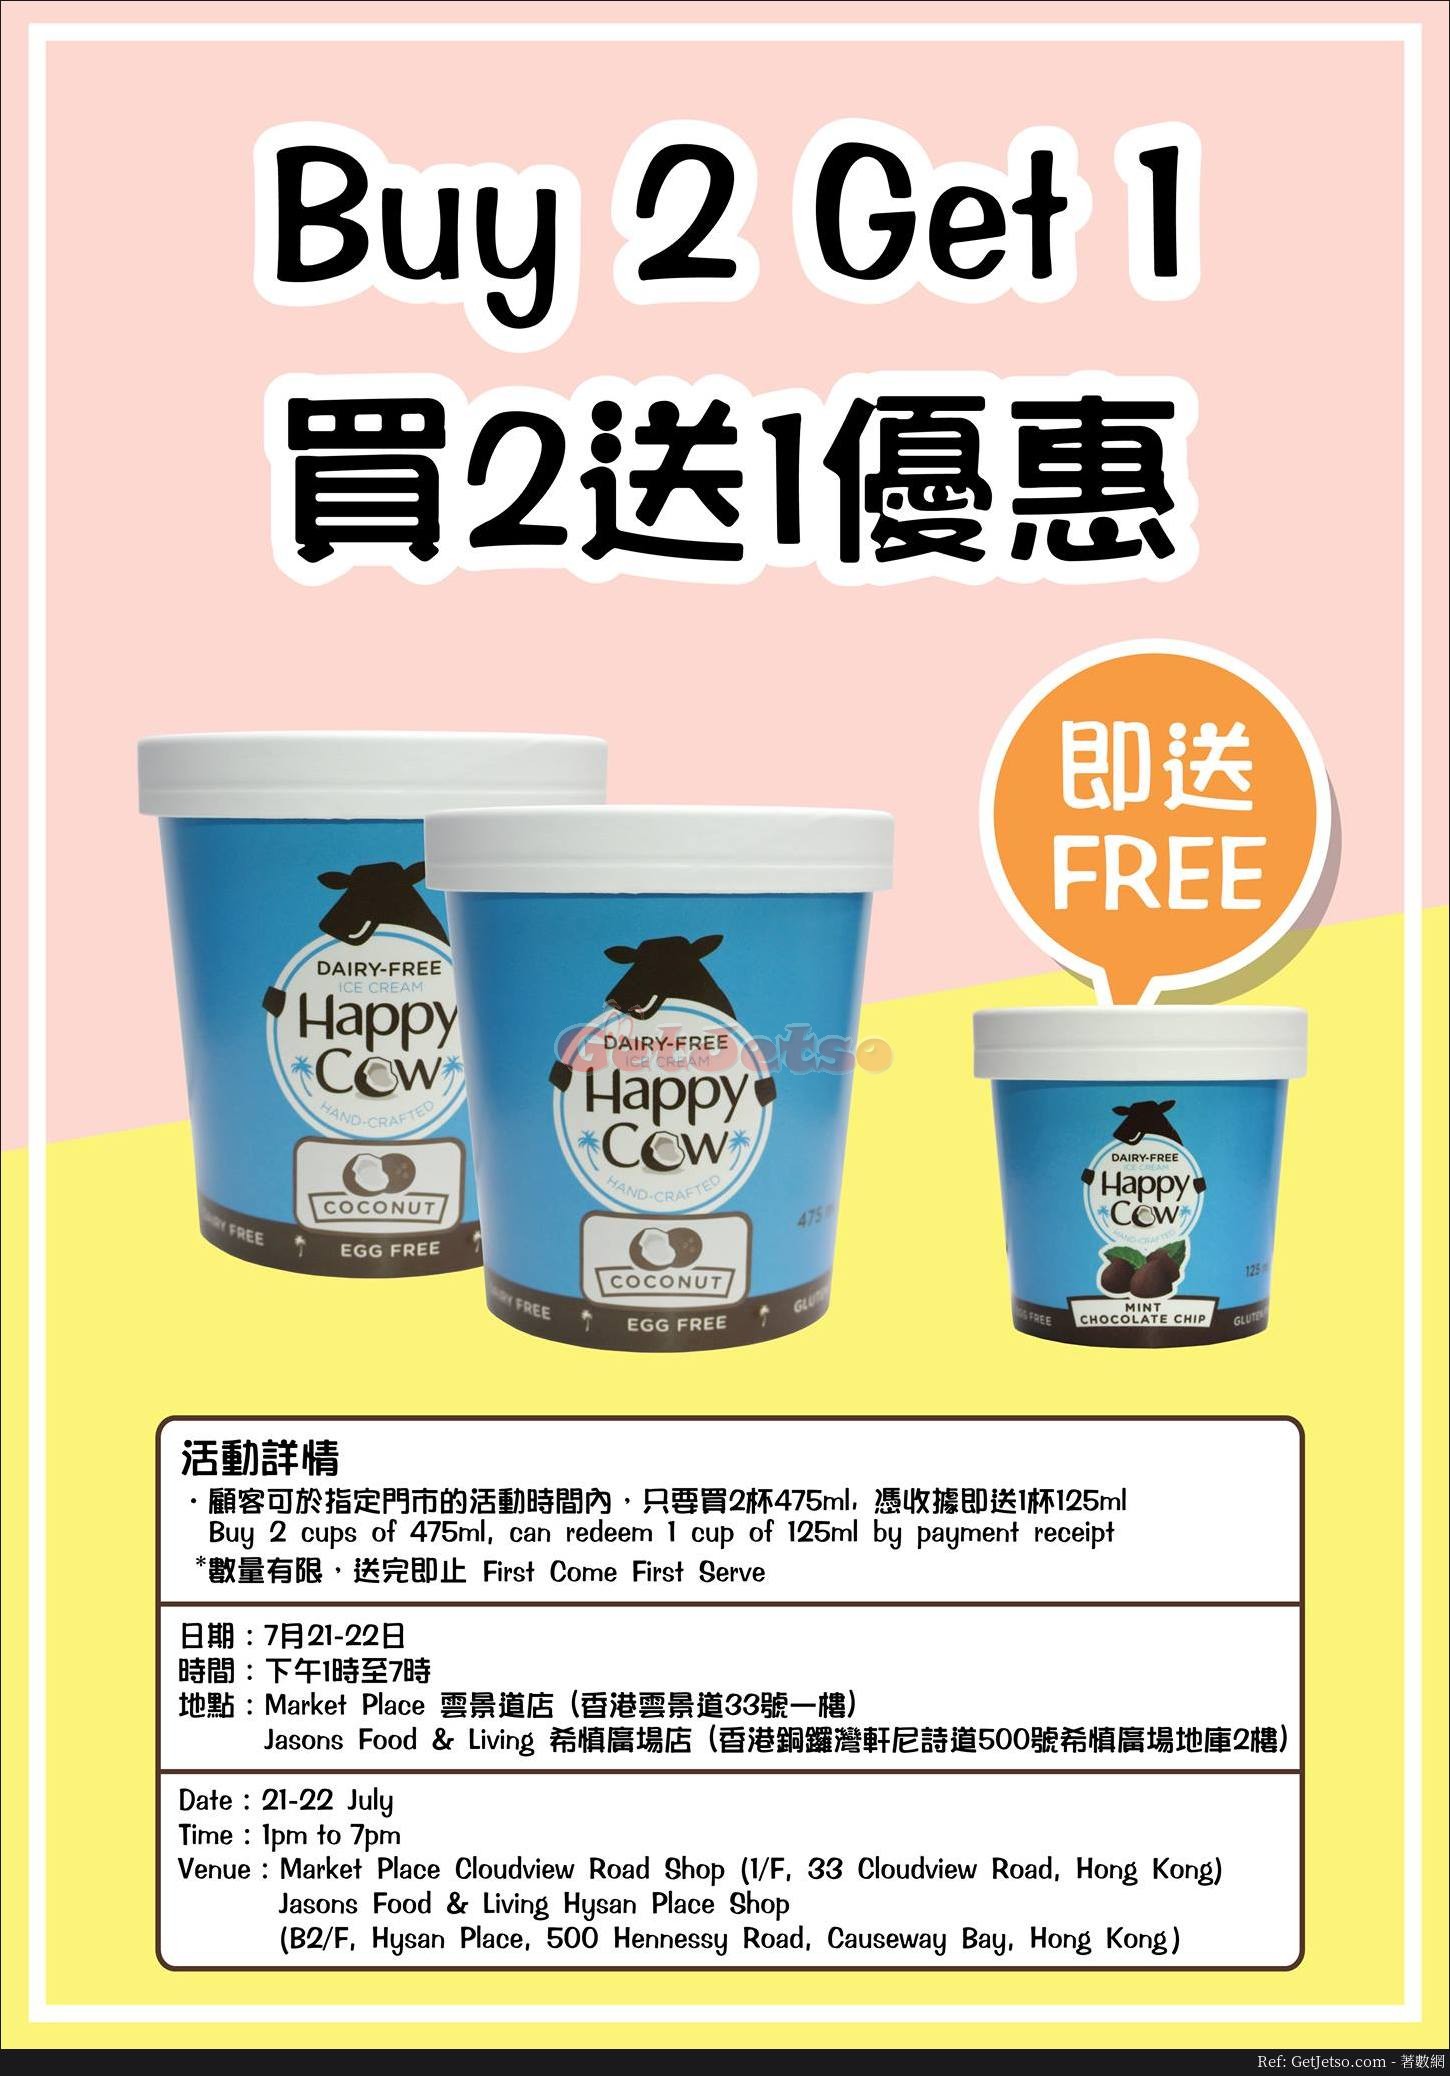 Happy Cow 雪糕買2送1優惠@指定商舖(18年7月21-22日)圖片1